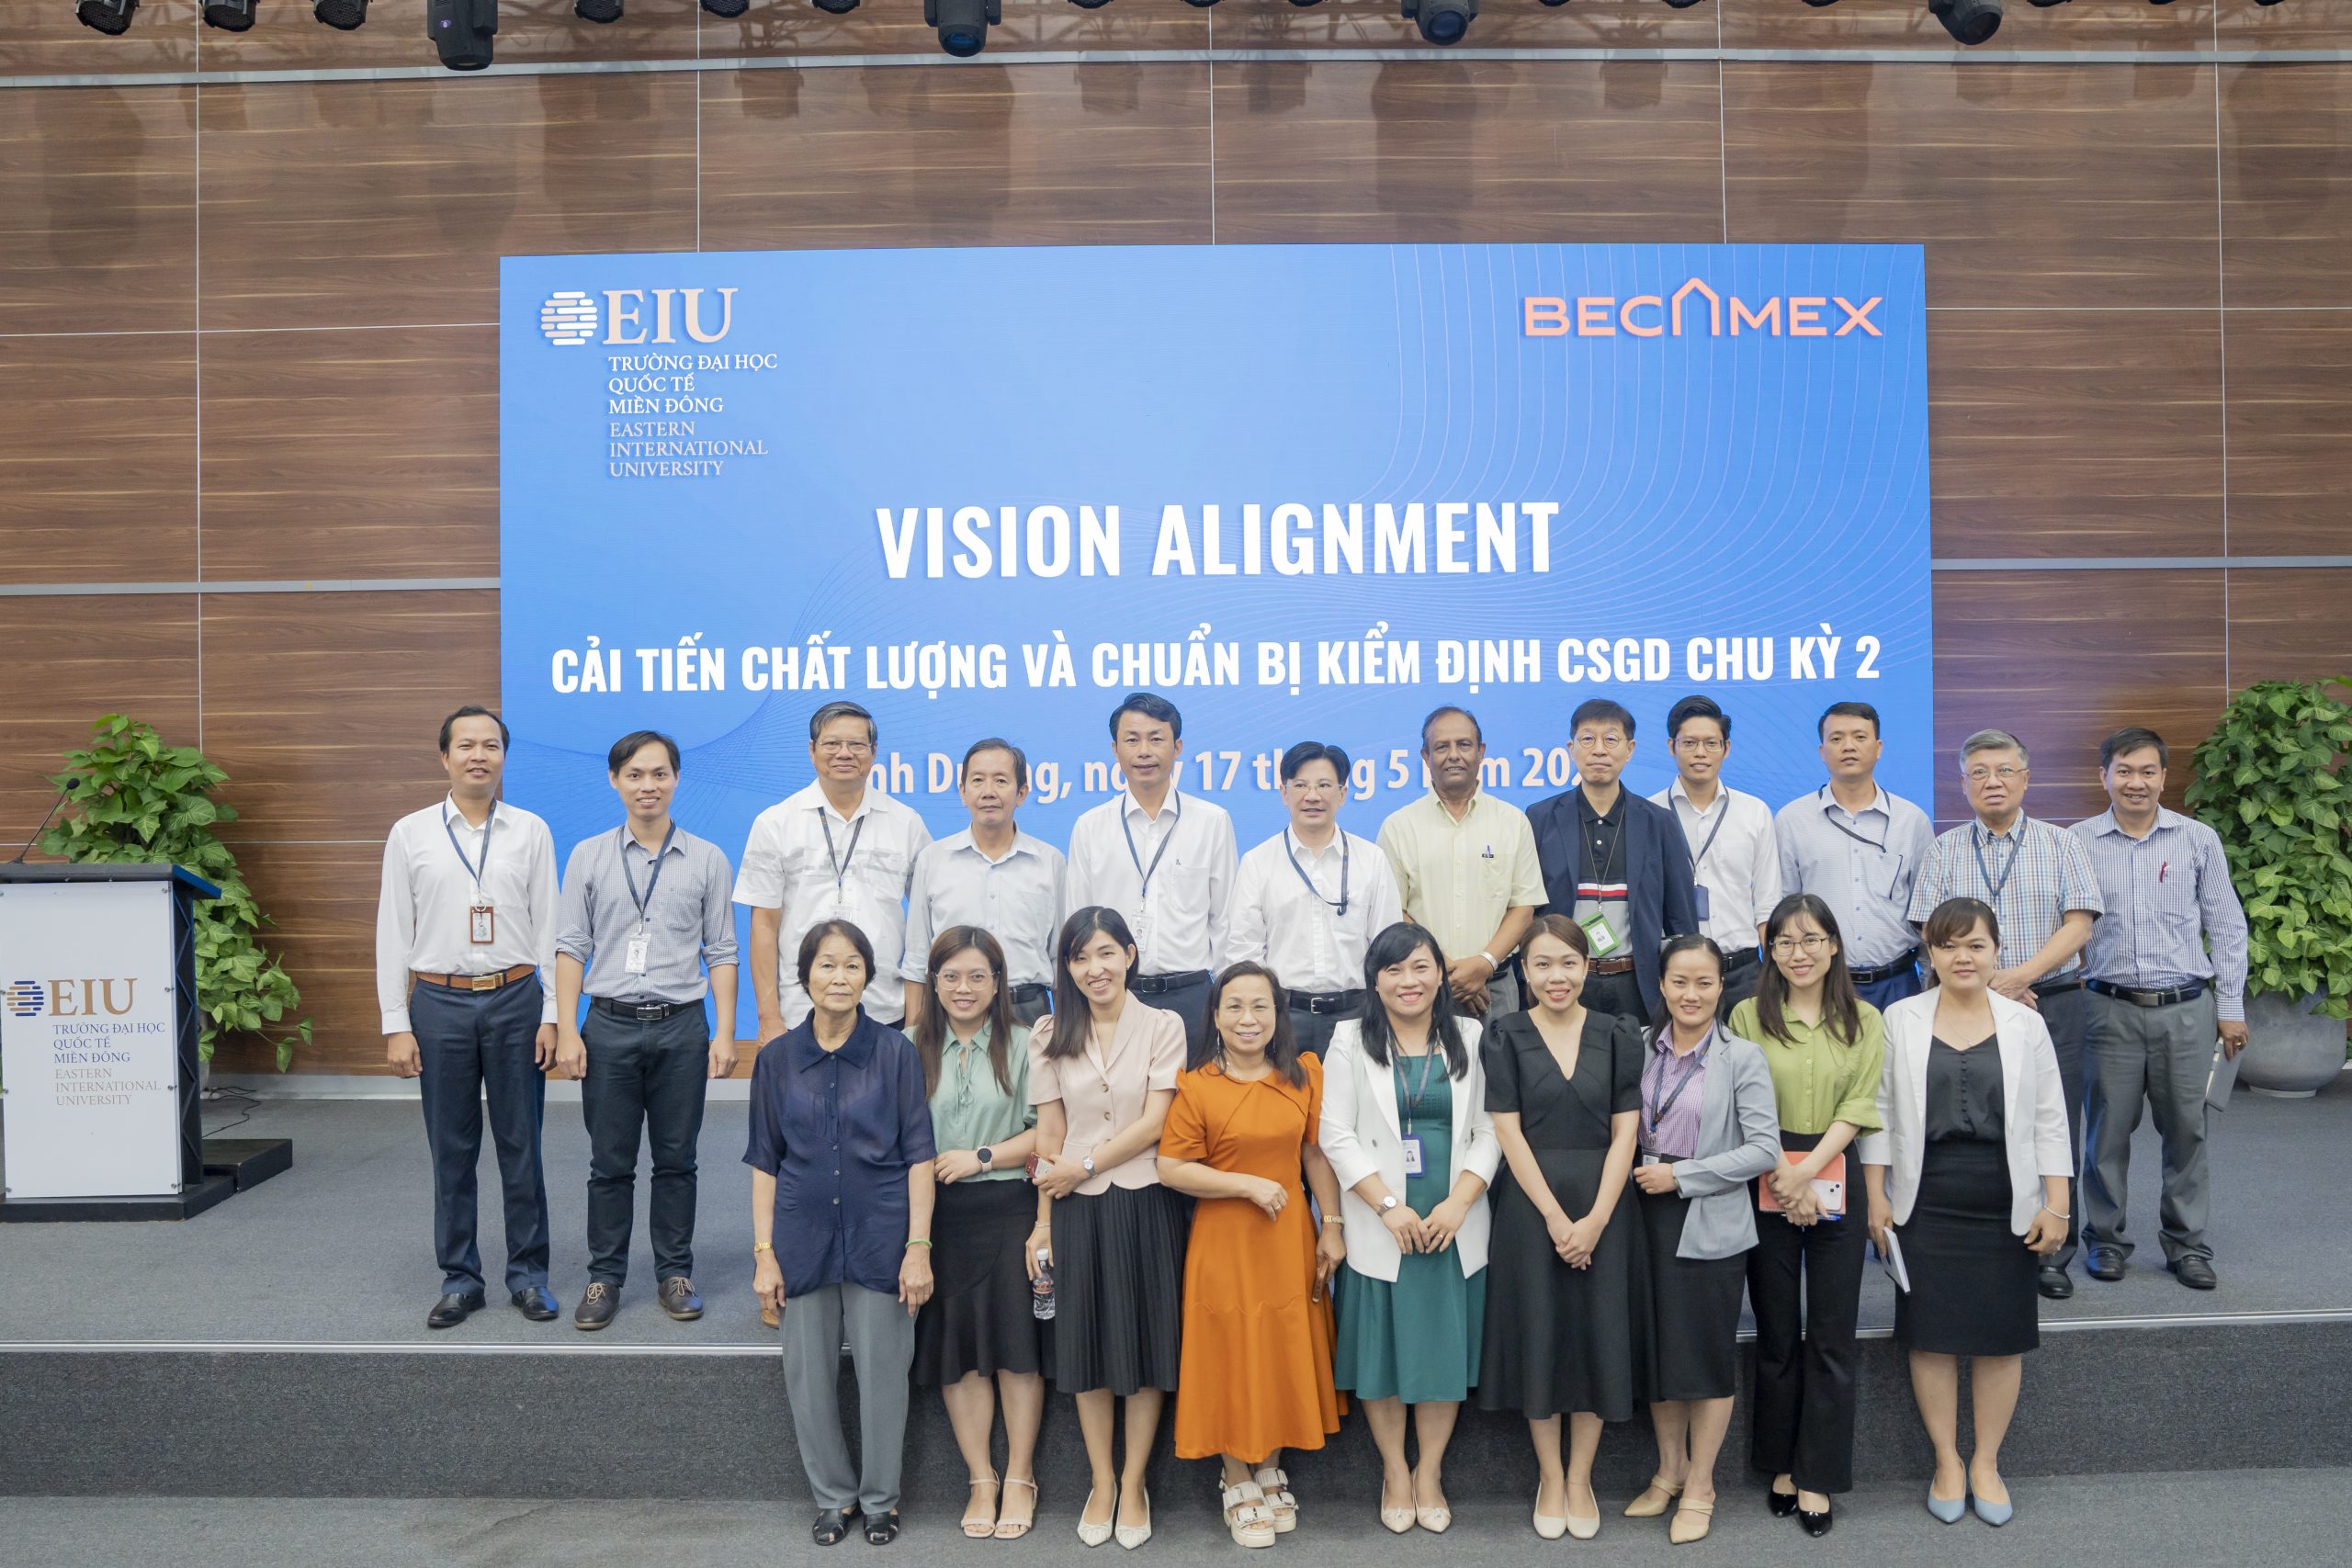 EIU Vision Alignment “Cải tiến chất lượng và chuẩn bị kiểm định cơ sở